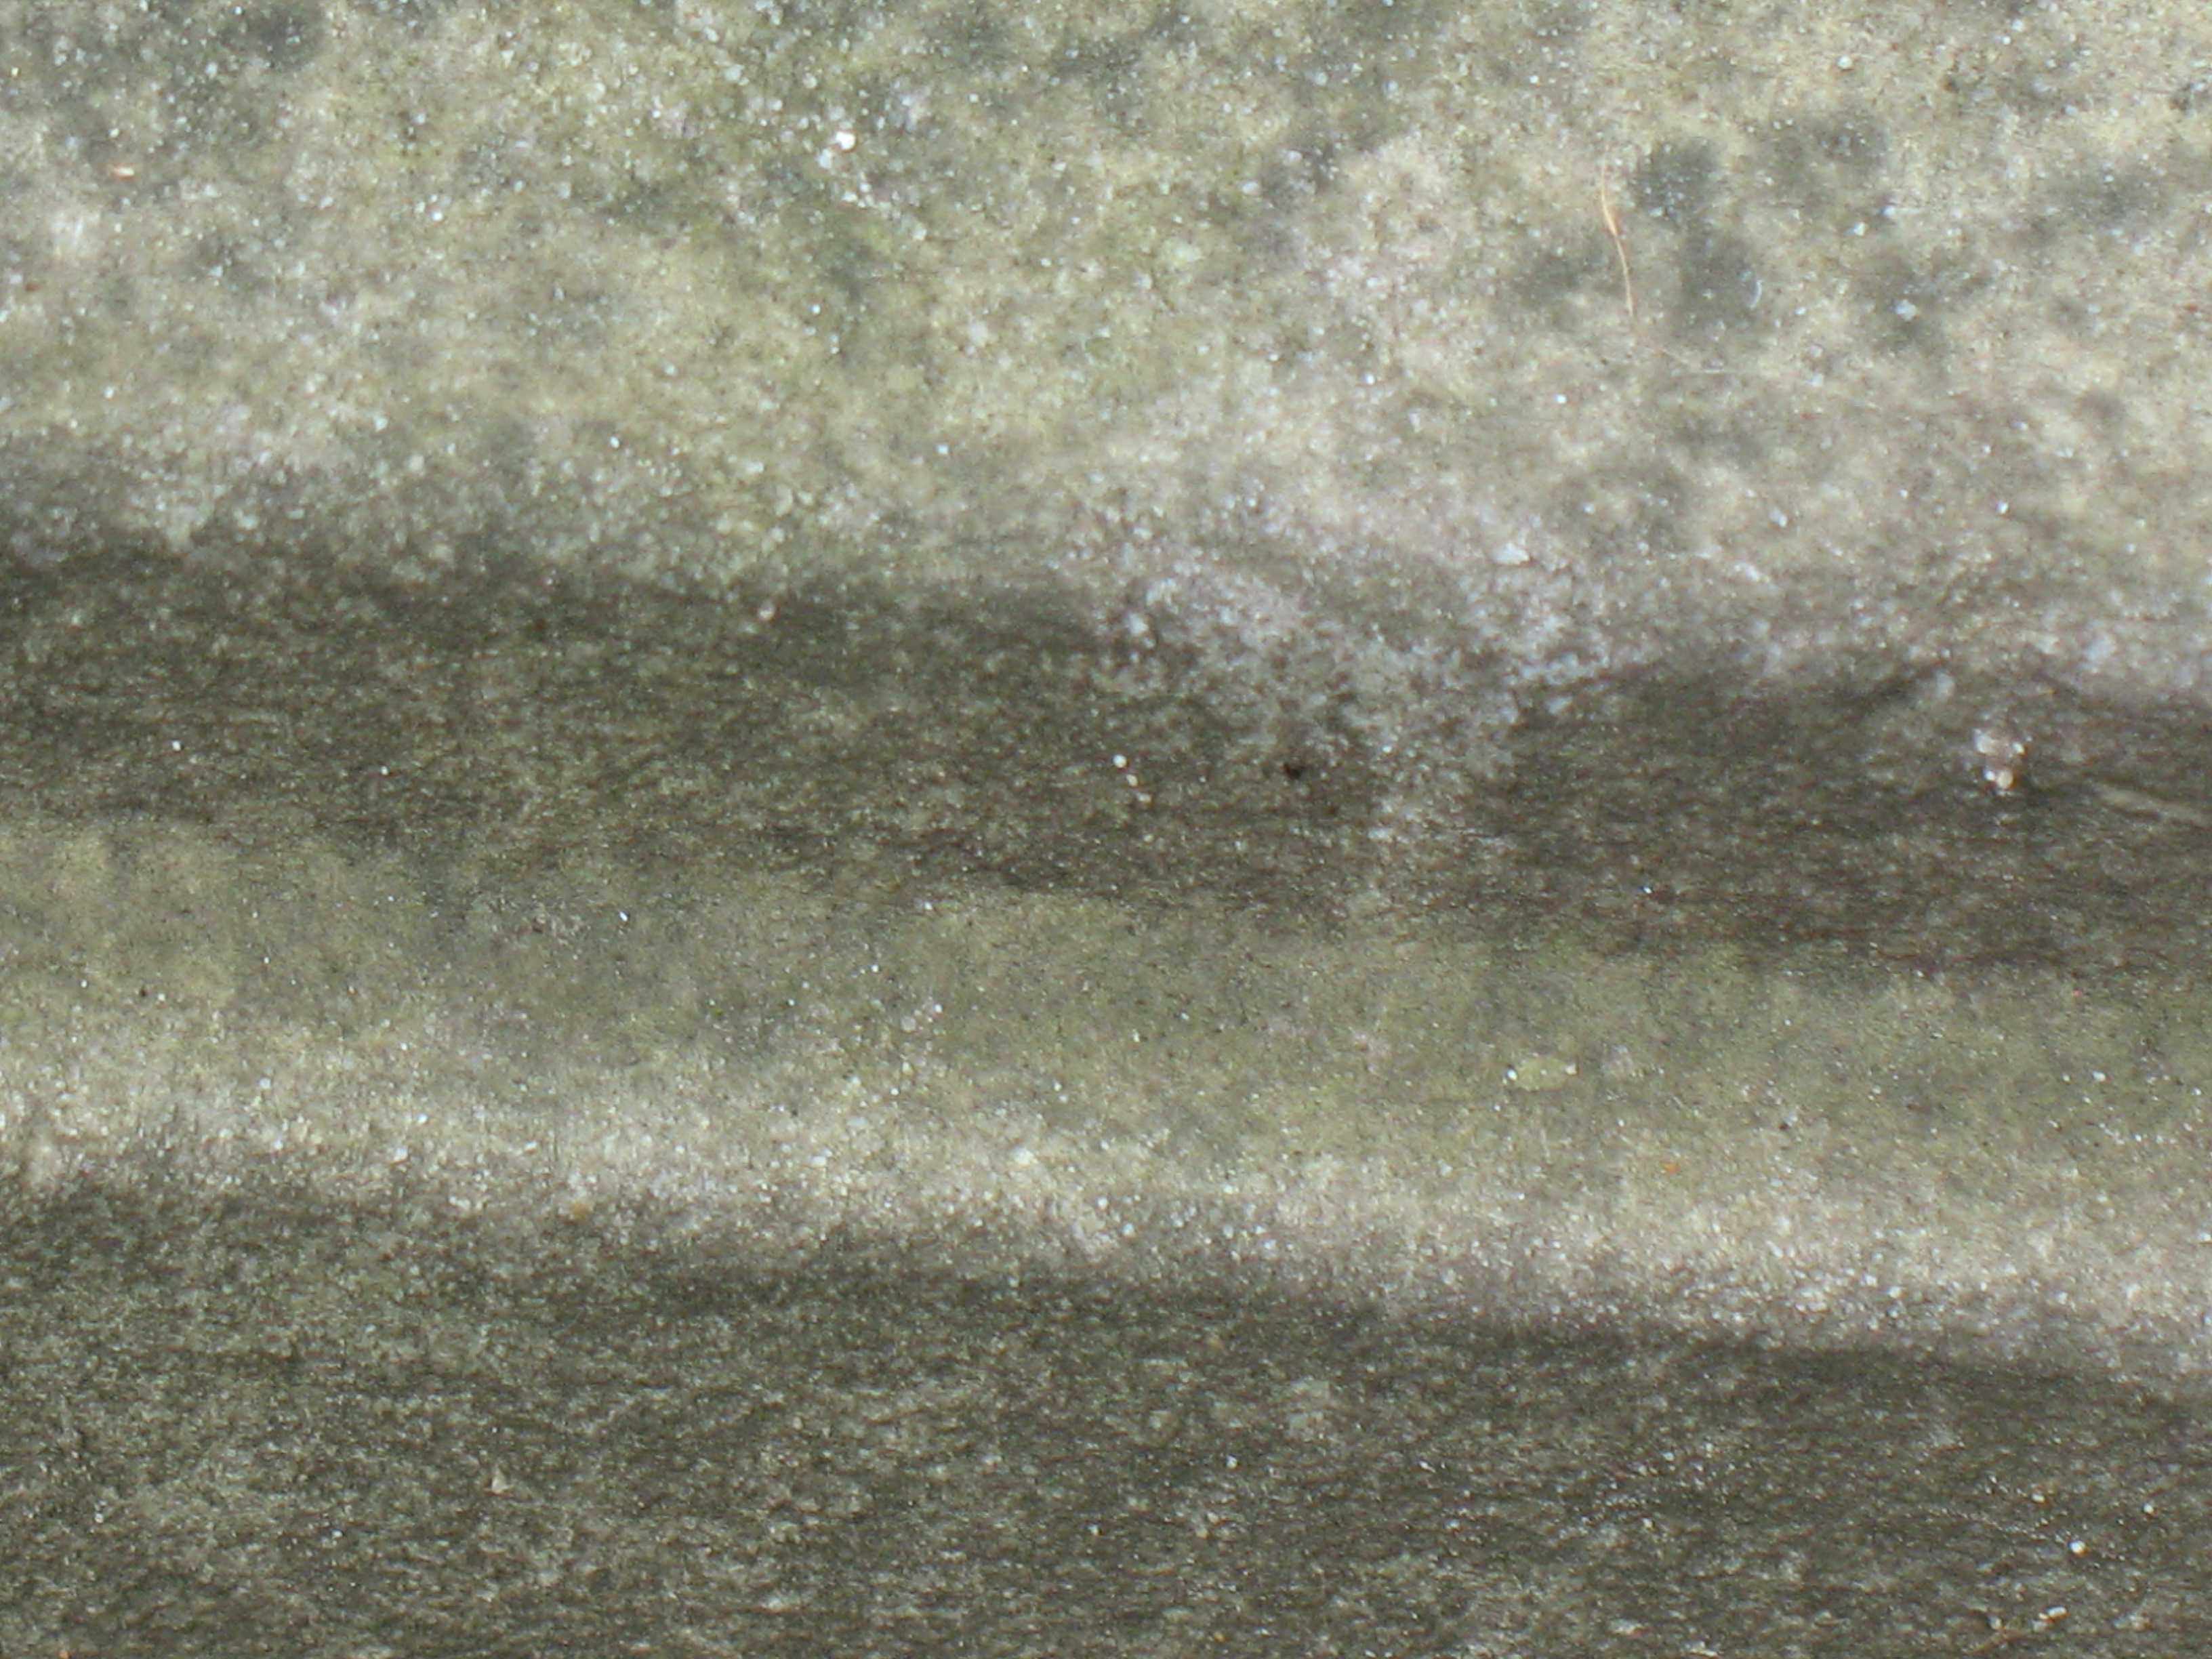 Огрубление поверхности и отшелушивание на сером мраморе